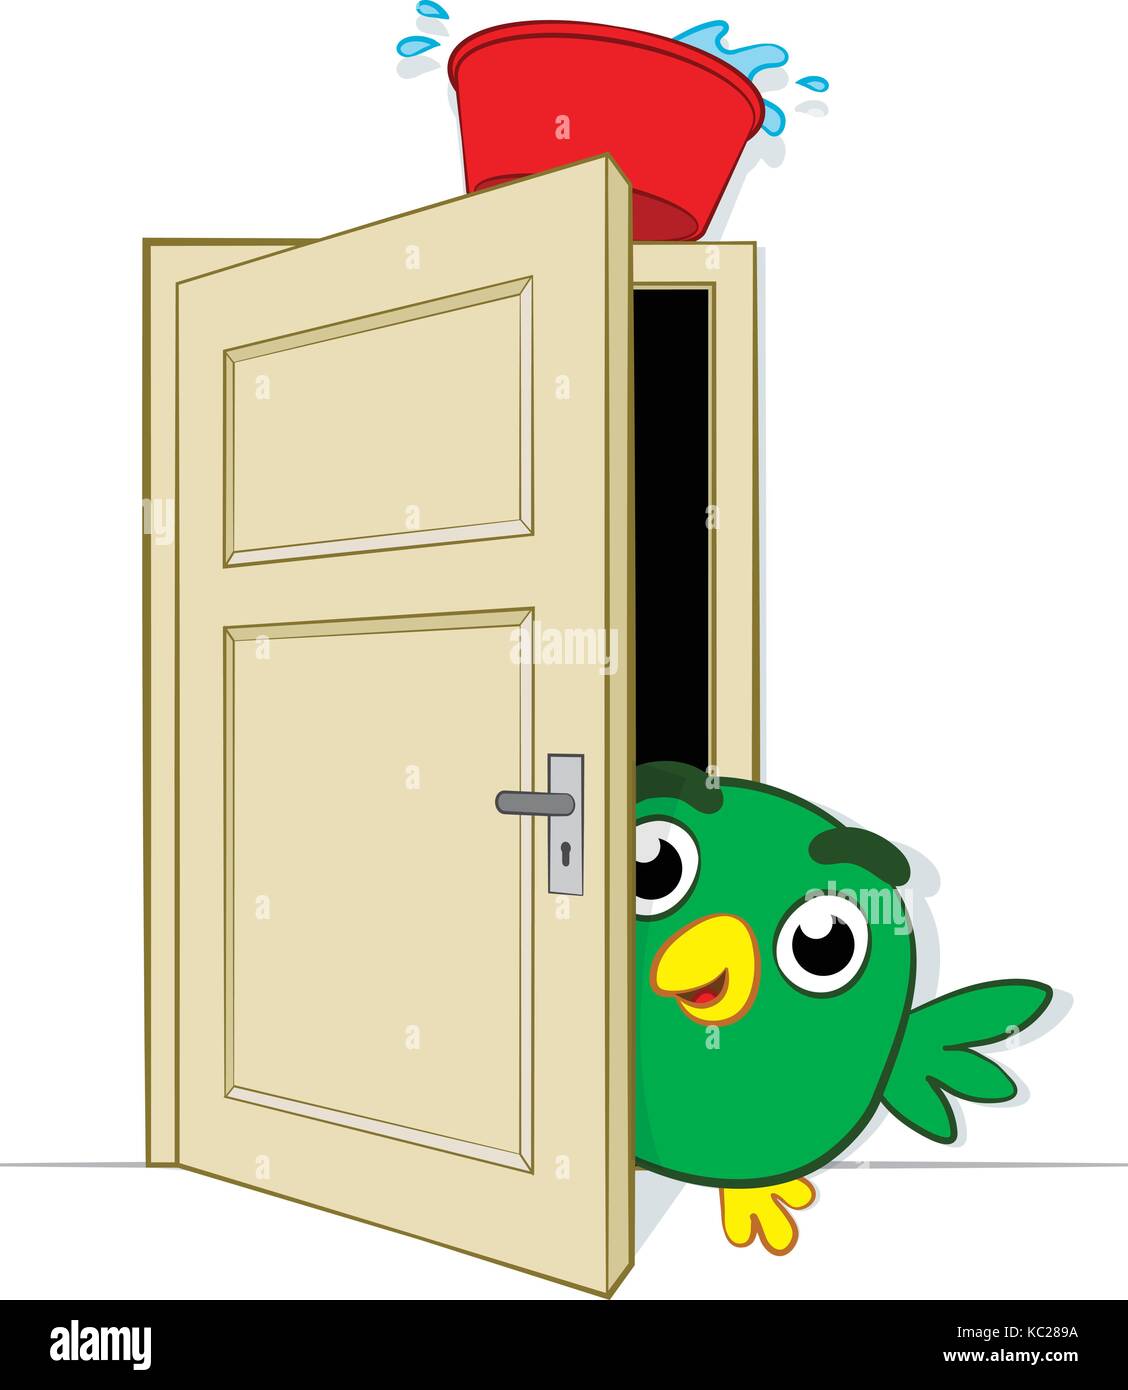 Piqueuse jouant sur un joli petit oiseau de bande dessinée piquant prudemment autour du bord d'une porte ouverte sur laquelle équilibre un bassin d'eau Illustration de Vecteur